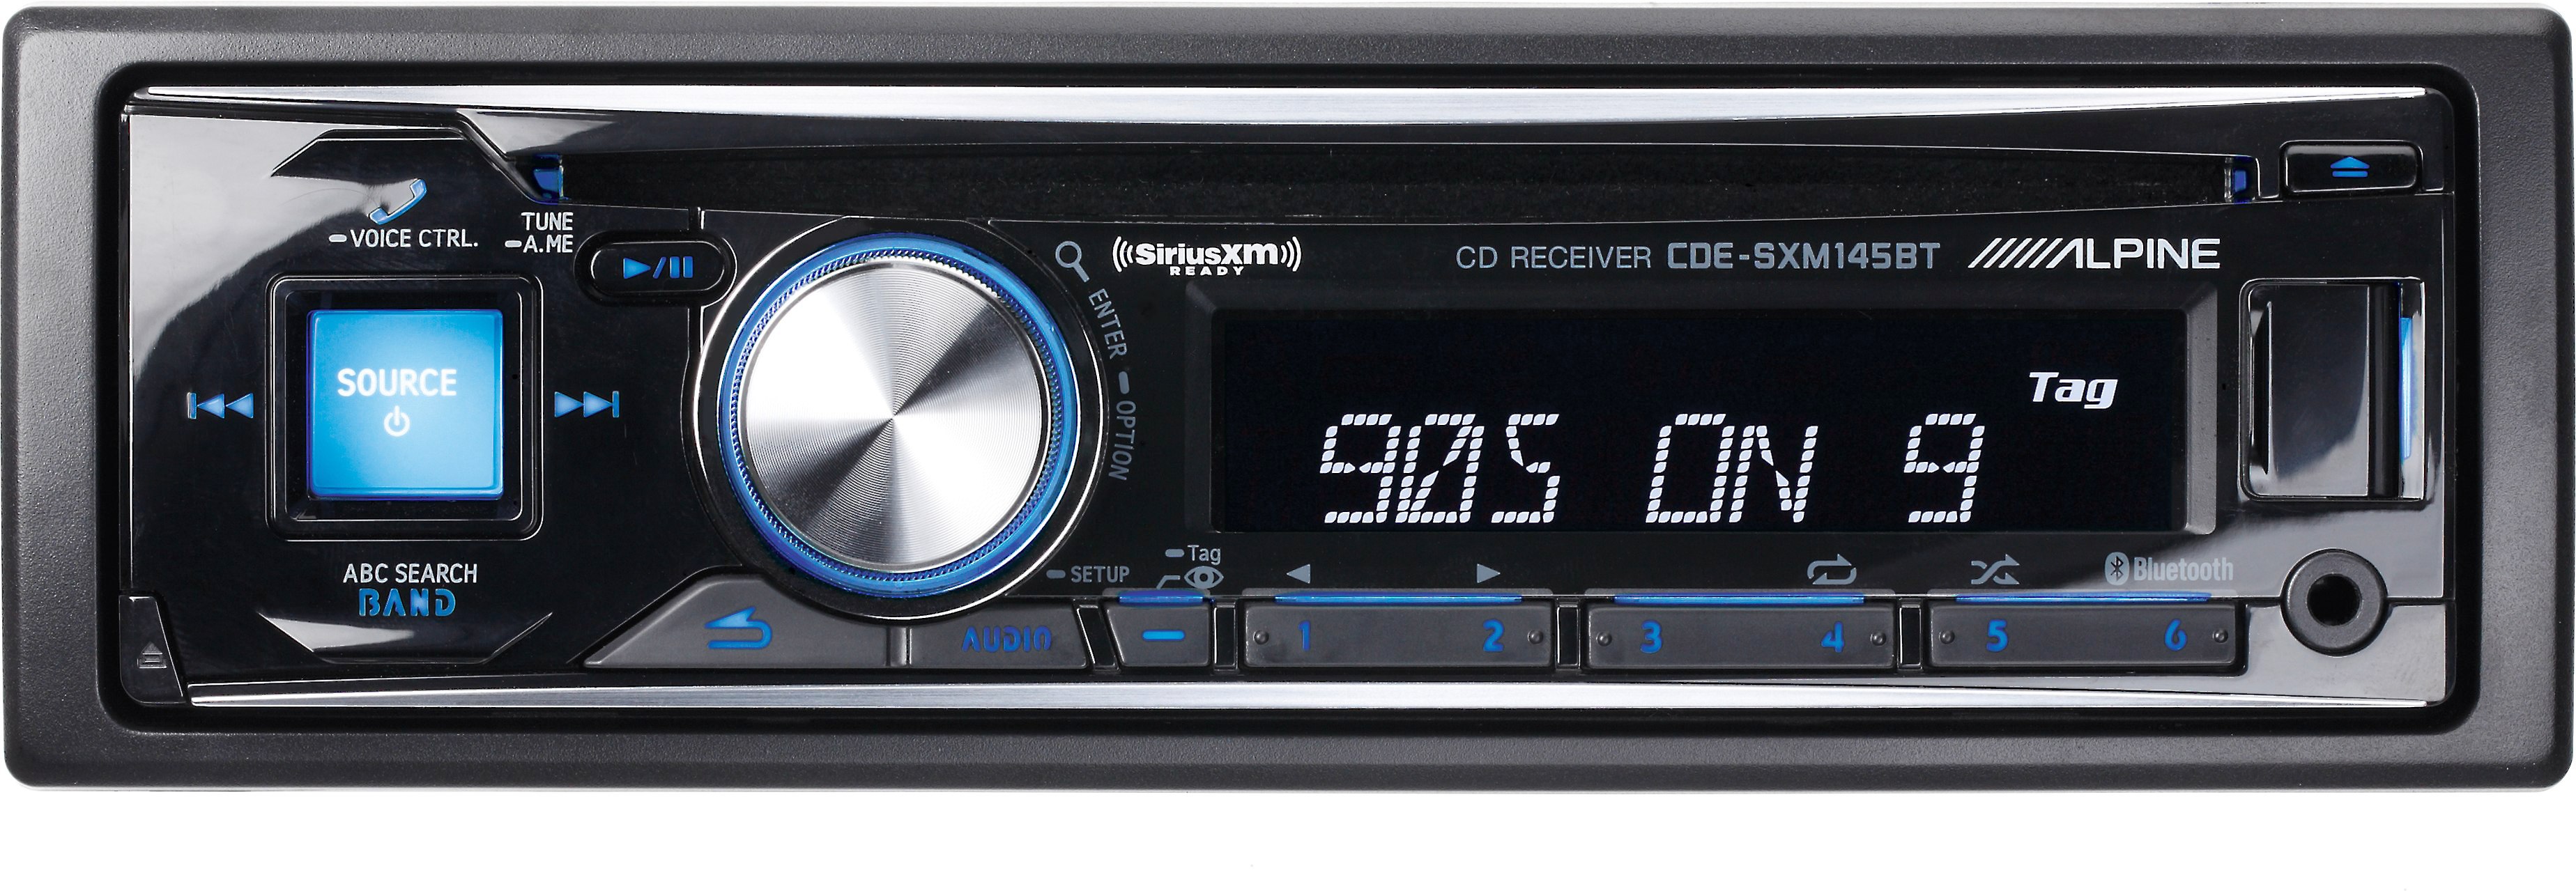 Alpine Cde Sxm145bt Cd Receiver With Free Siriusxm Satellite Radio Tuner At Crutchfield